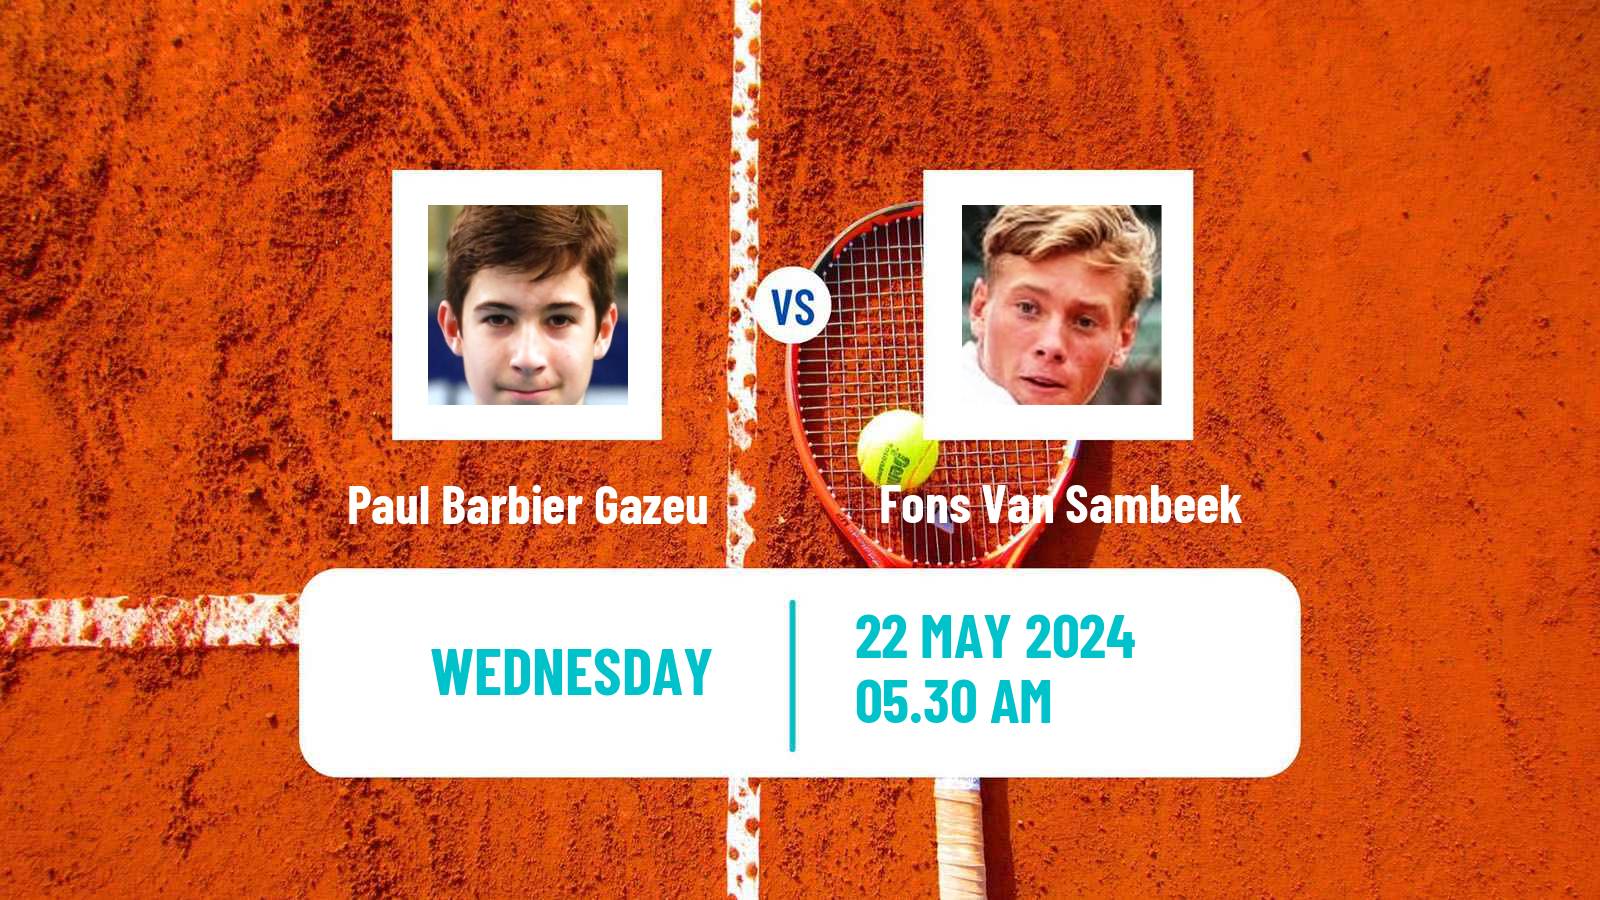 Tennis ITF M25 Deauville Men Paul Barbier Gazeu - Fons Van Sambeek